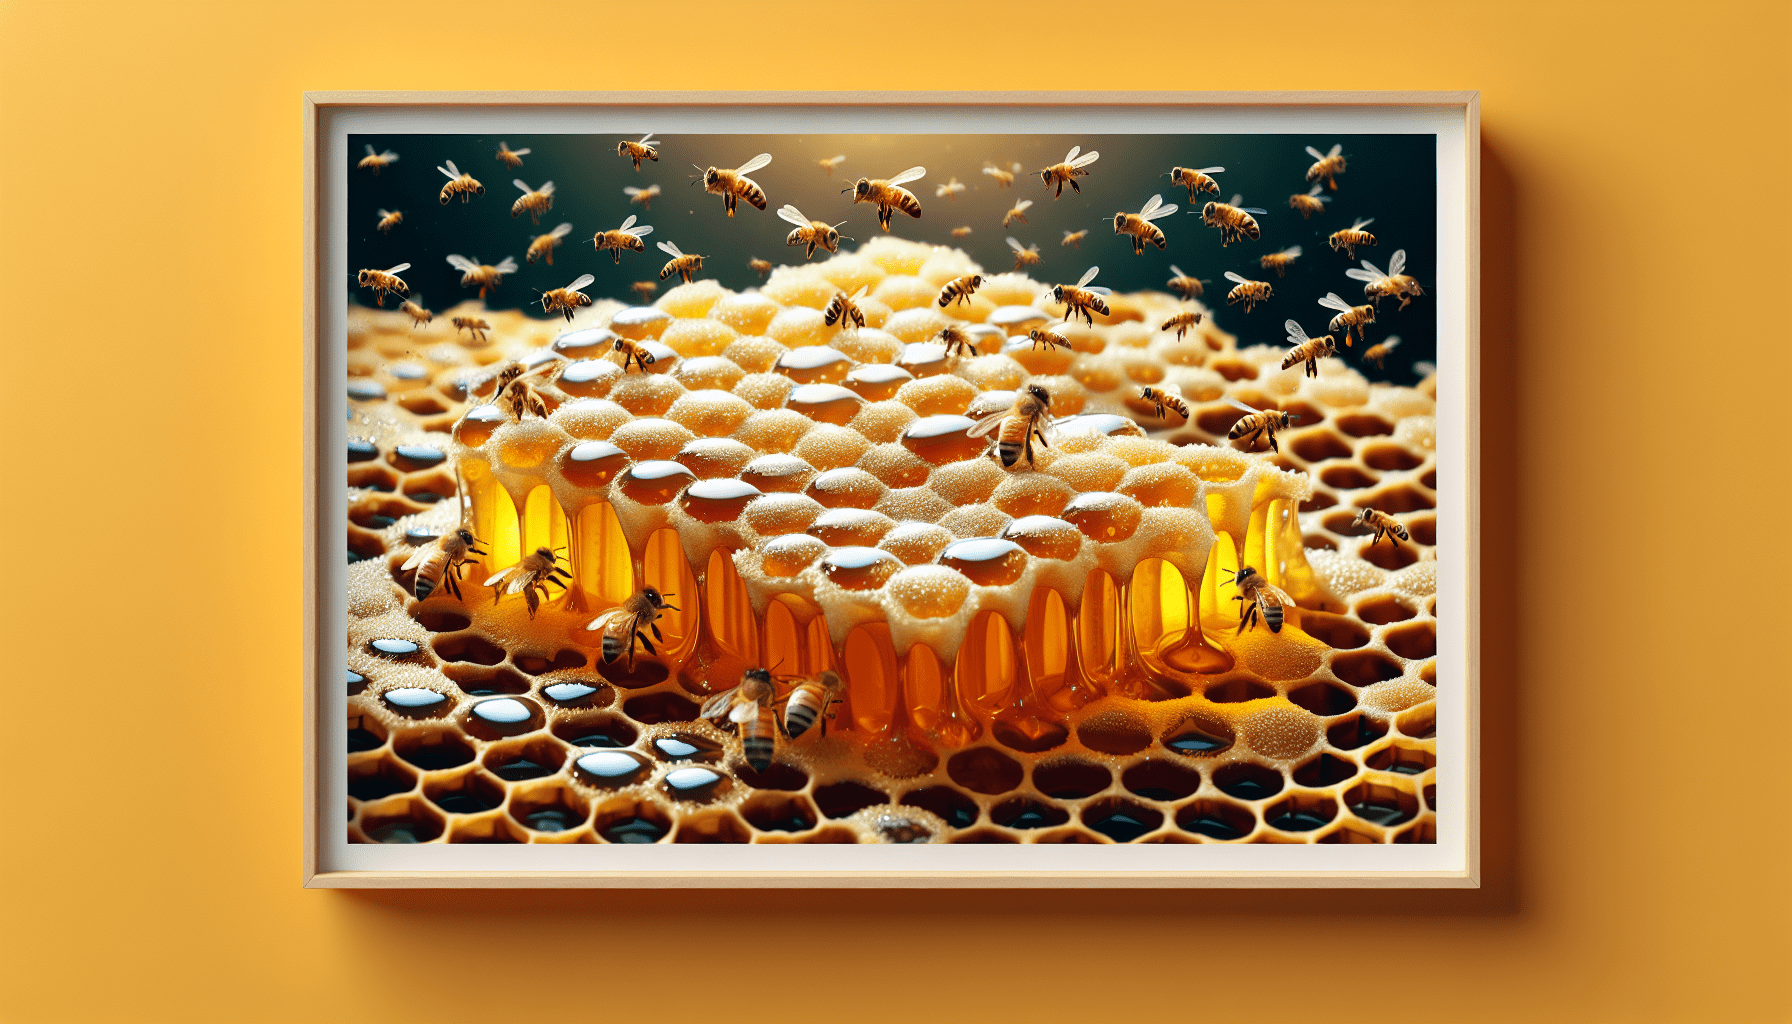 19 can honey help alleviate symptoms of seasonal allergies